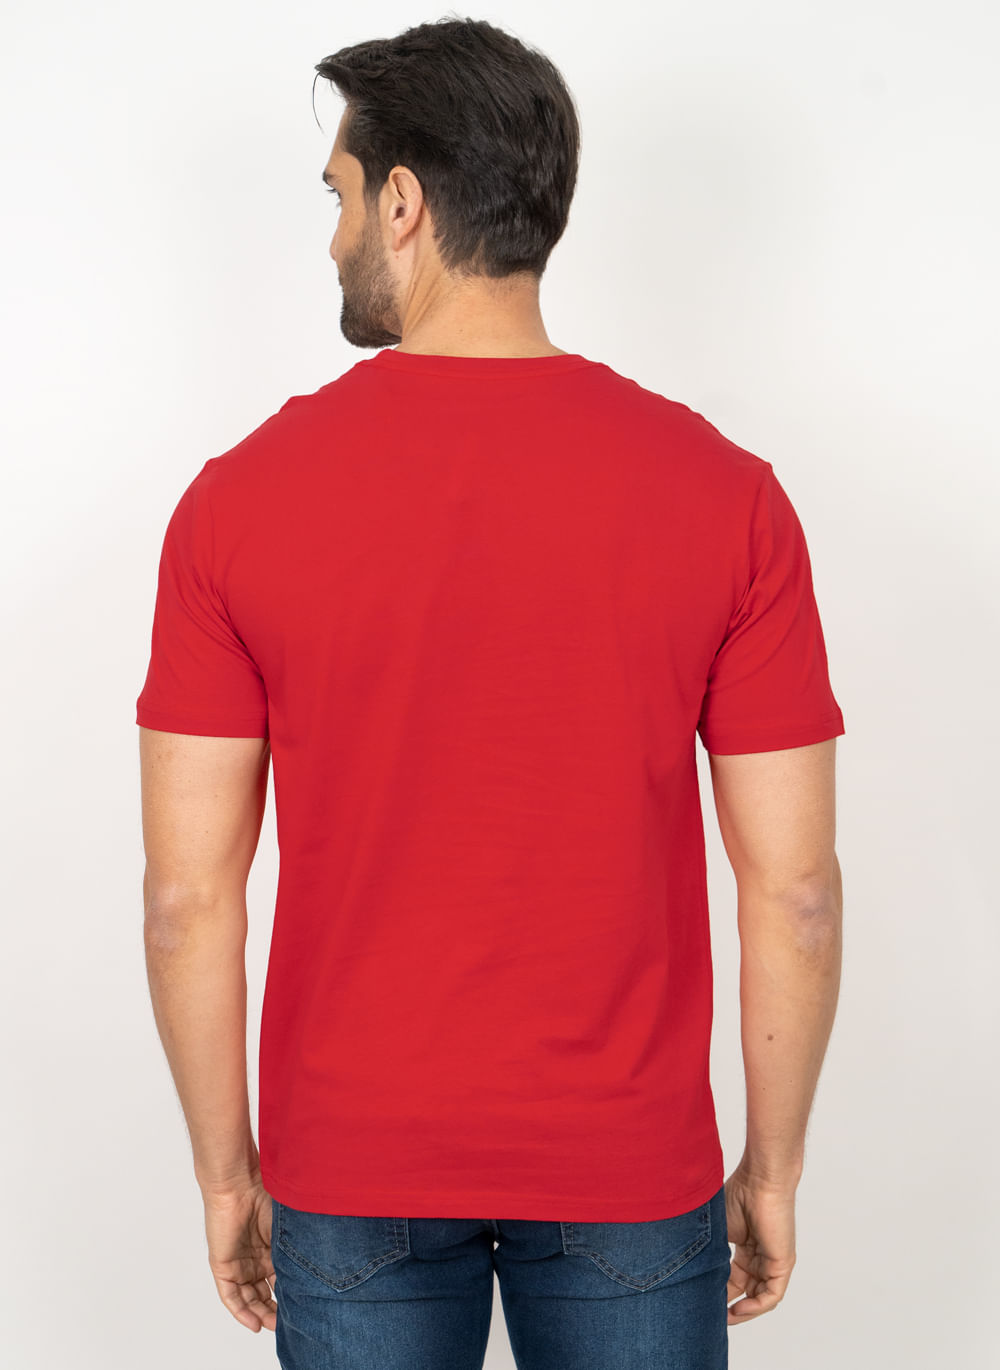 Camiseta-Aleatory-Basica-com-Bolso-Vermelha-Vermelho-P